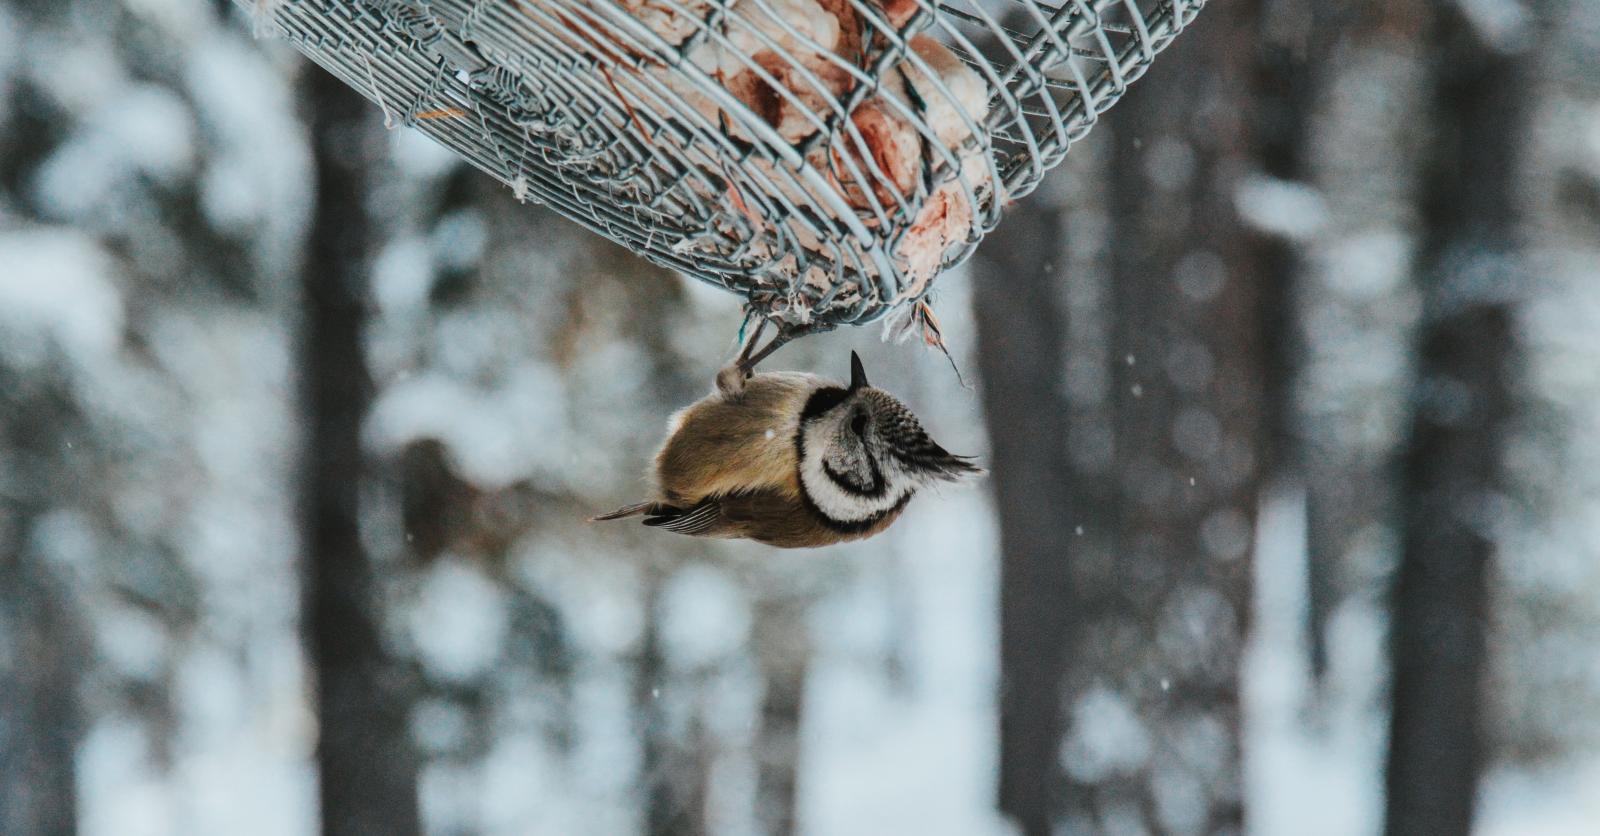 Boules de graisse pour oiseaux : voilà pourquoi il faut retirer les filets !